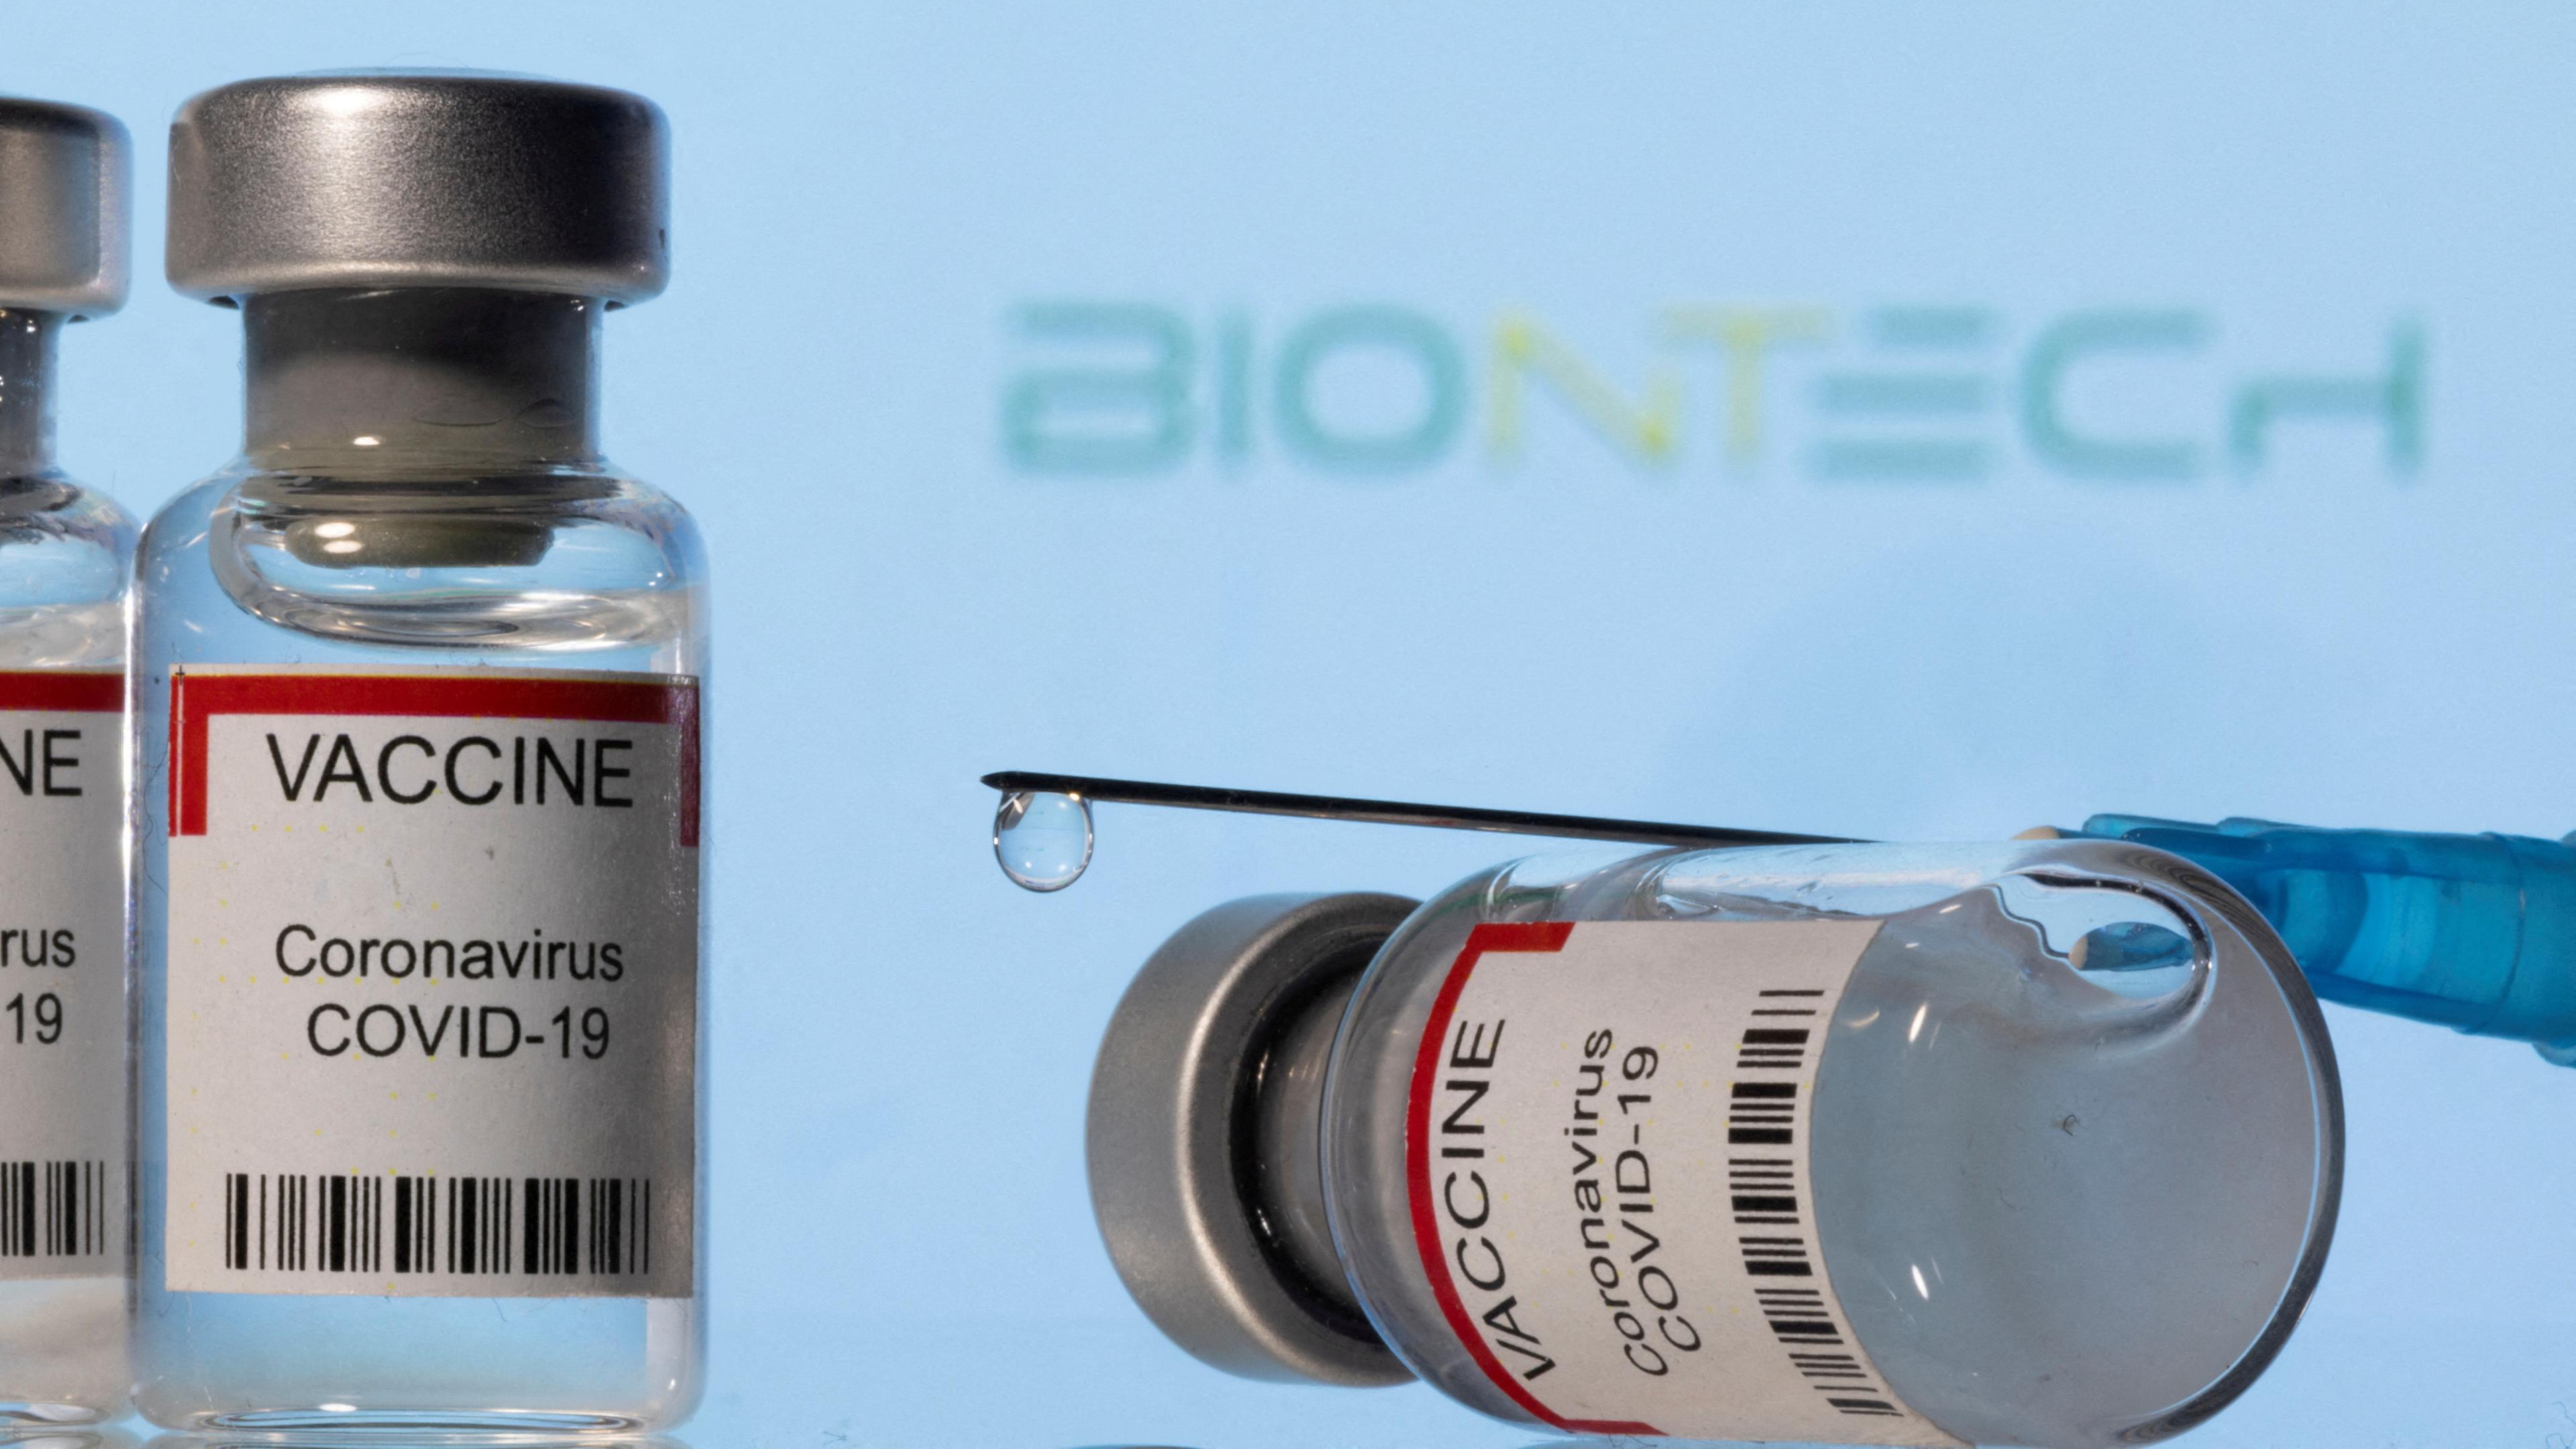 Fläschchen und eine Spritze mit dem Coronaimpfstoff liegen auf einer Fläche, das Biontech-Logo ist im Hintergrund zu sehen, Zenica, 08.08.2022